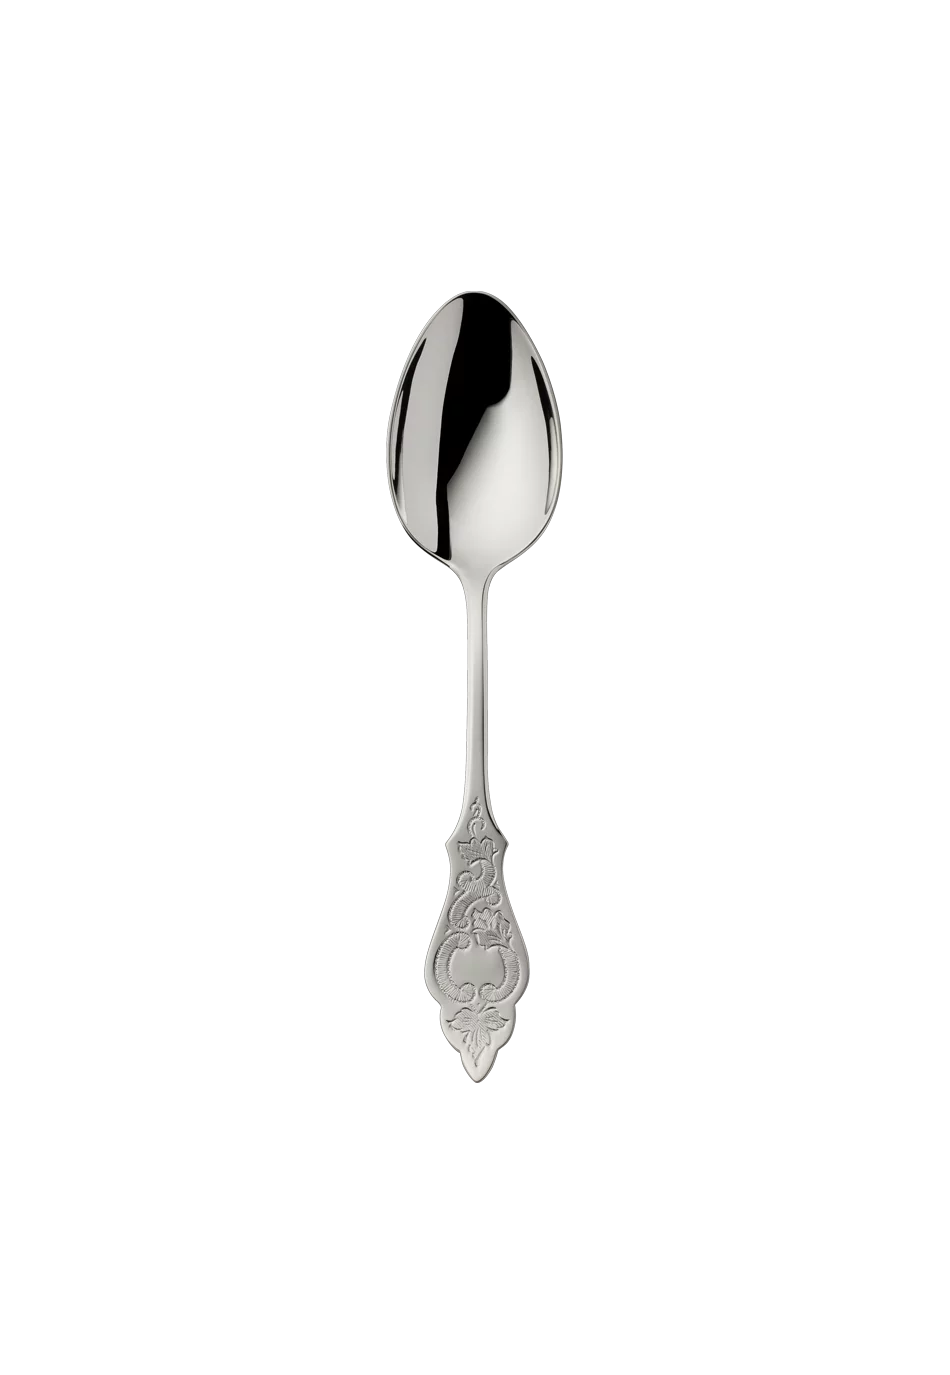 Ostfriesen Children's Spoon (18/8 stainless steel)